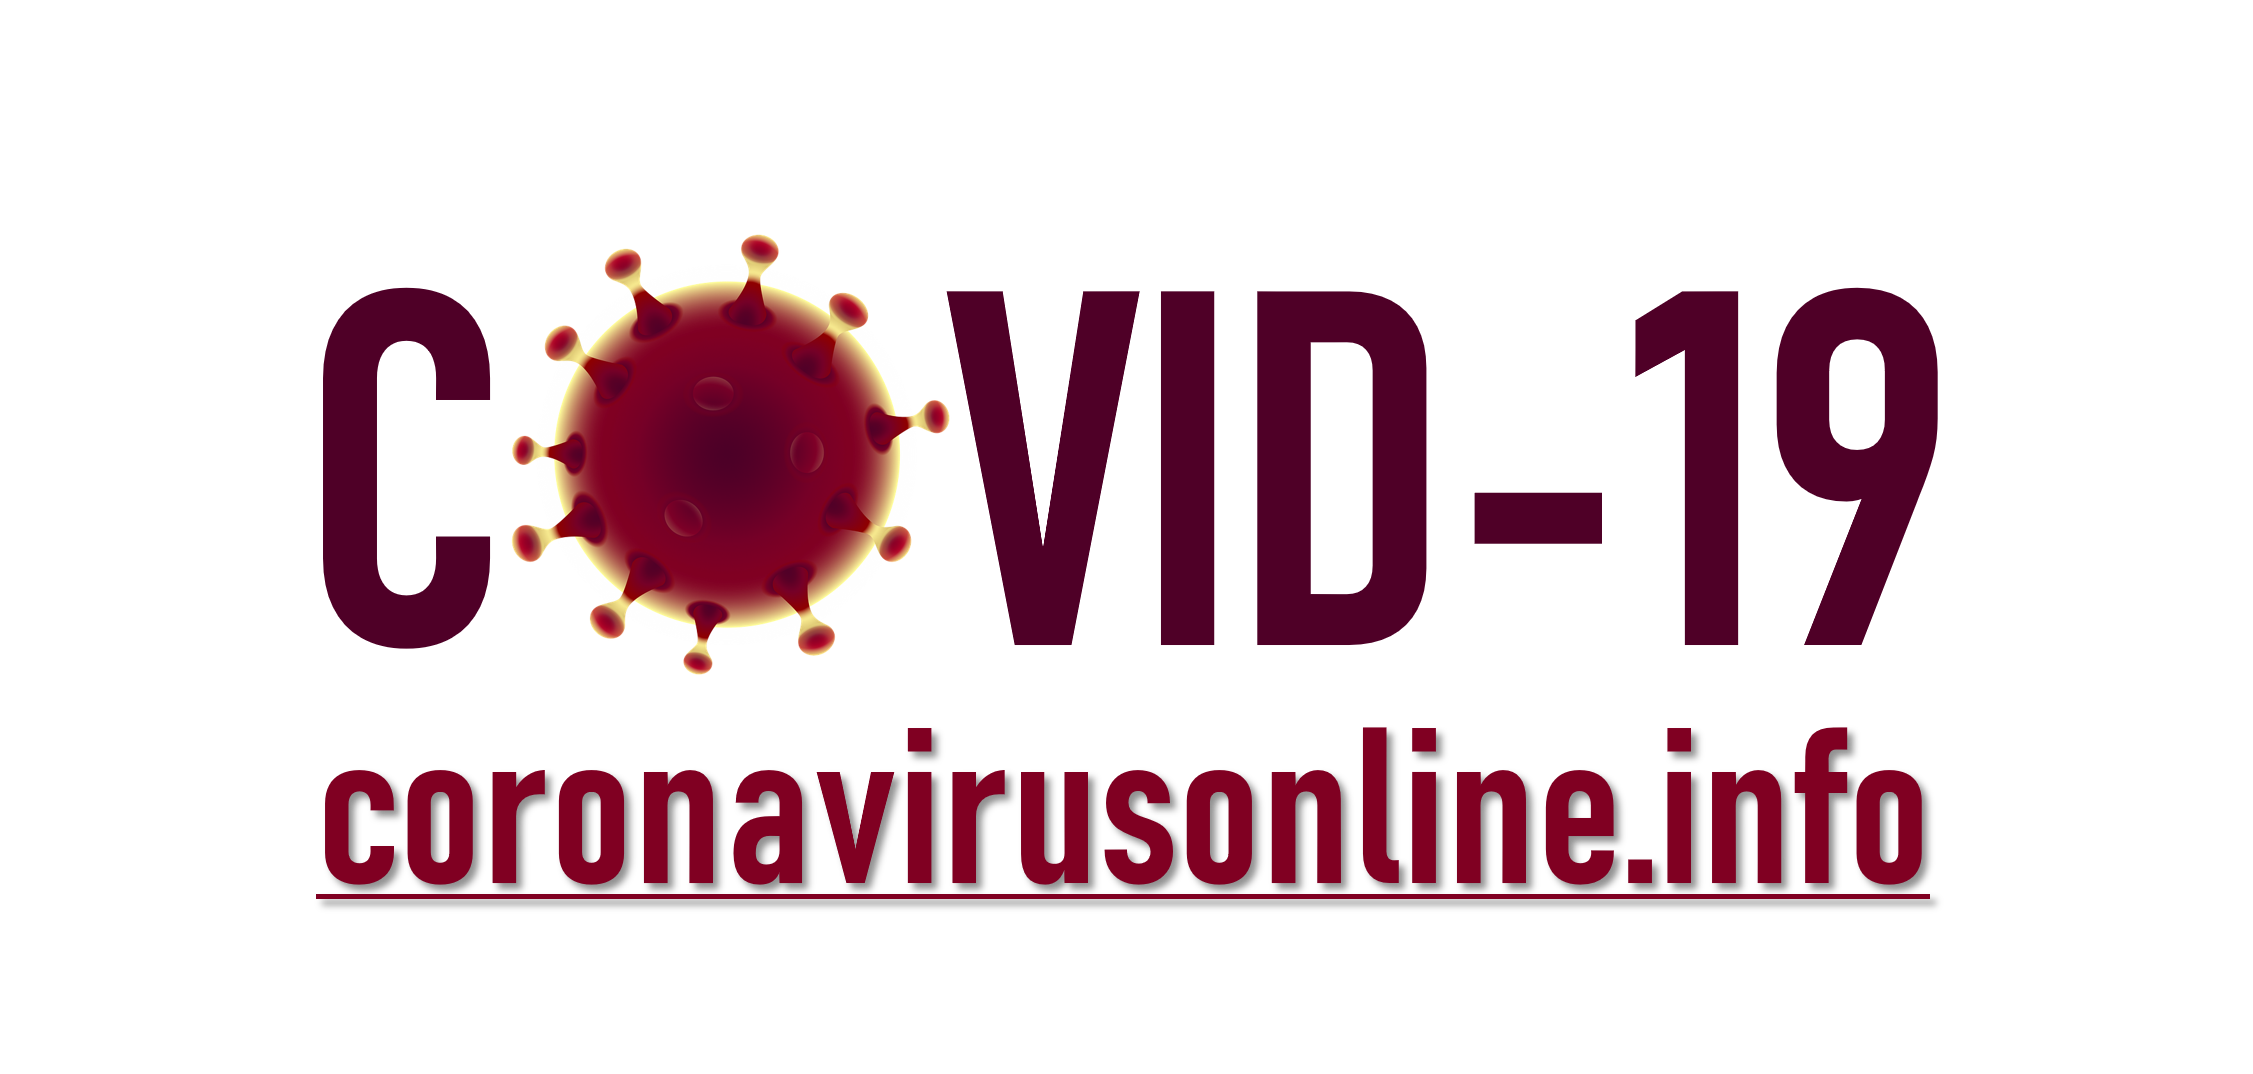 Coronavirusonline.info